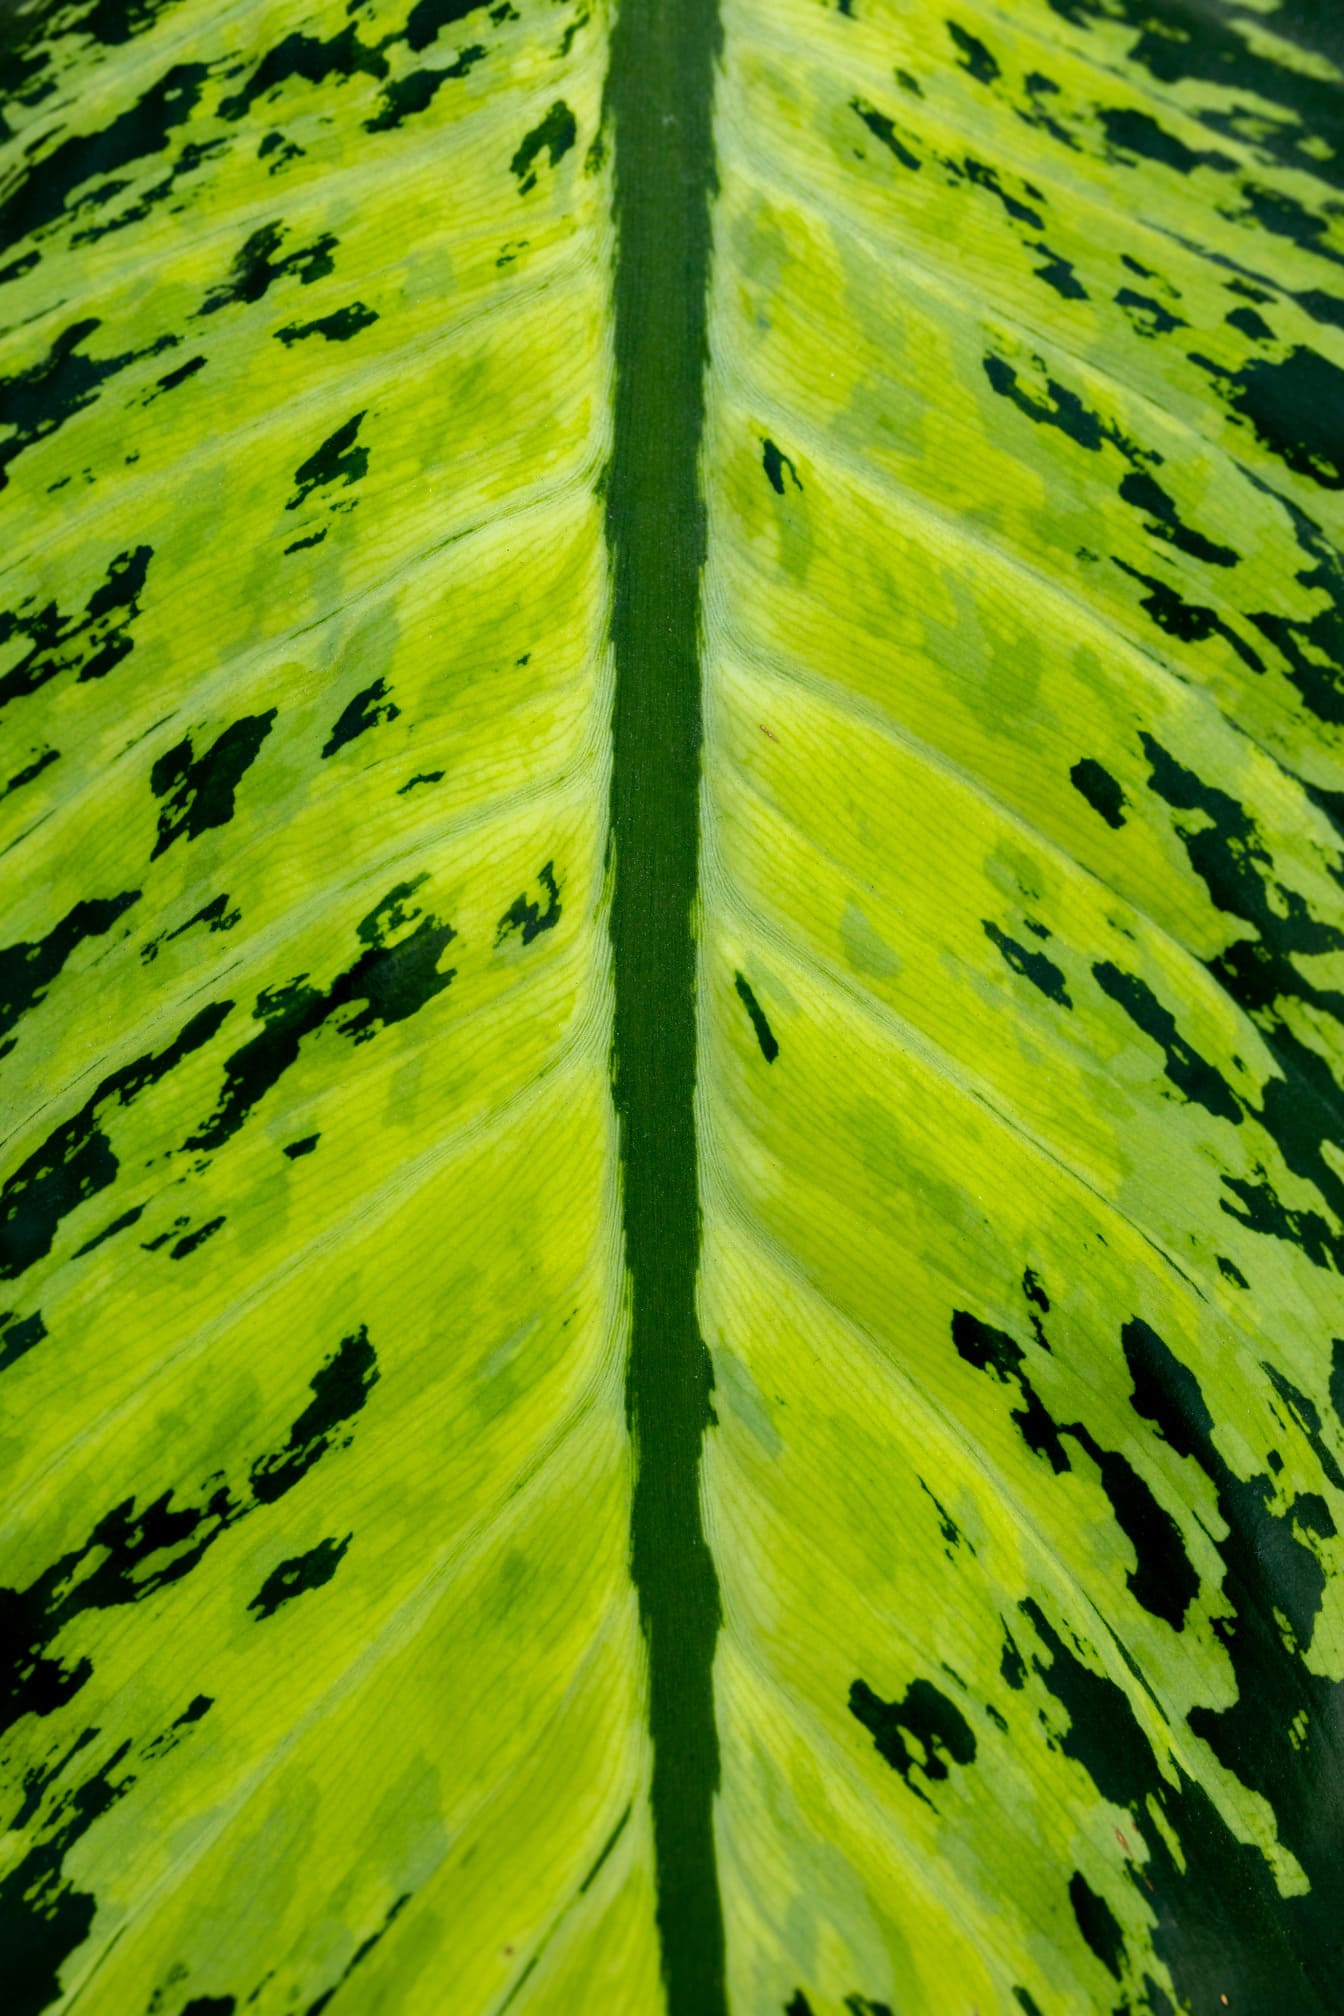 Nemá trstina (Dieffenbachia) žltozelený list zblízka